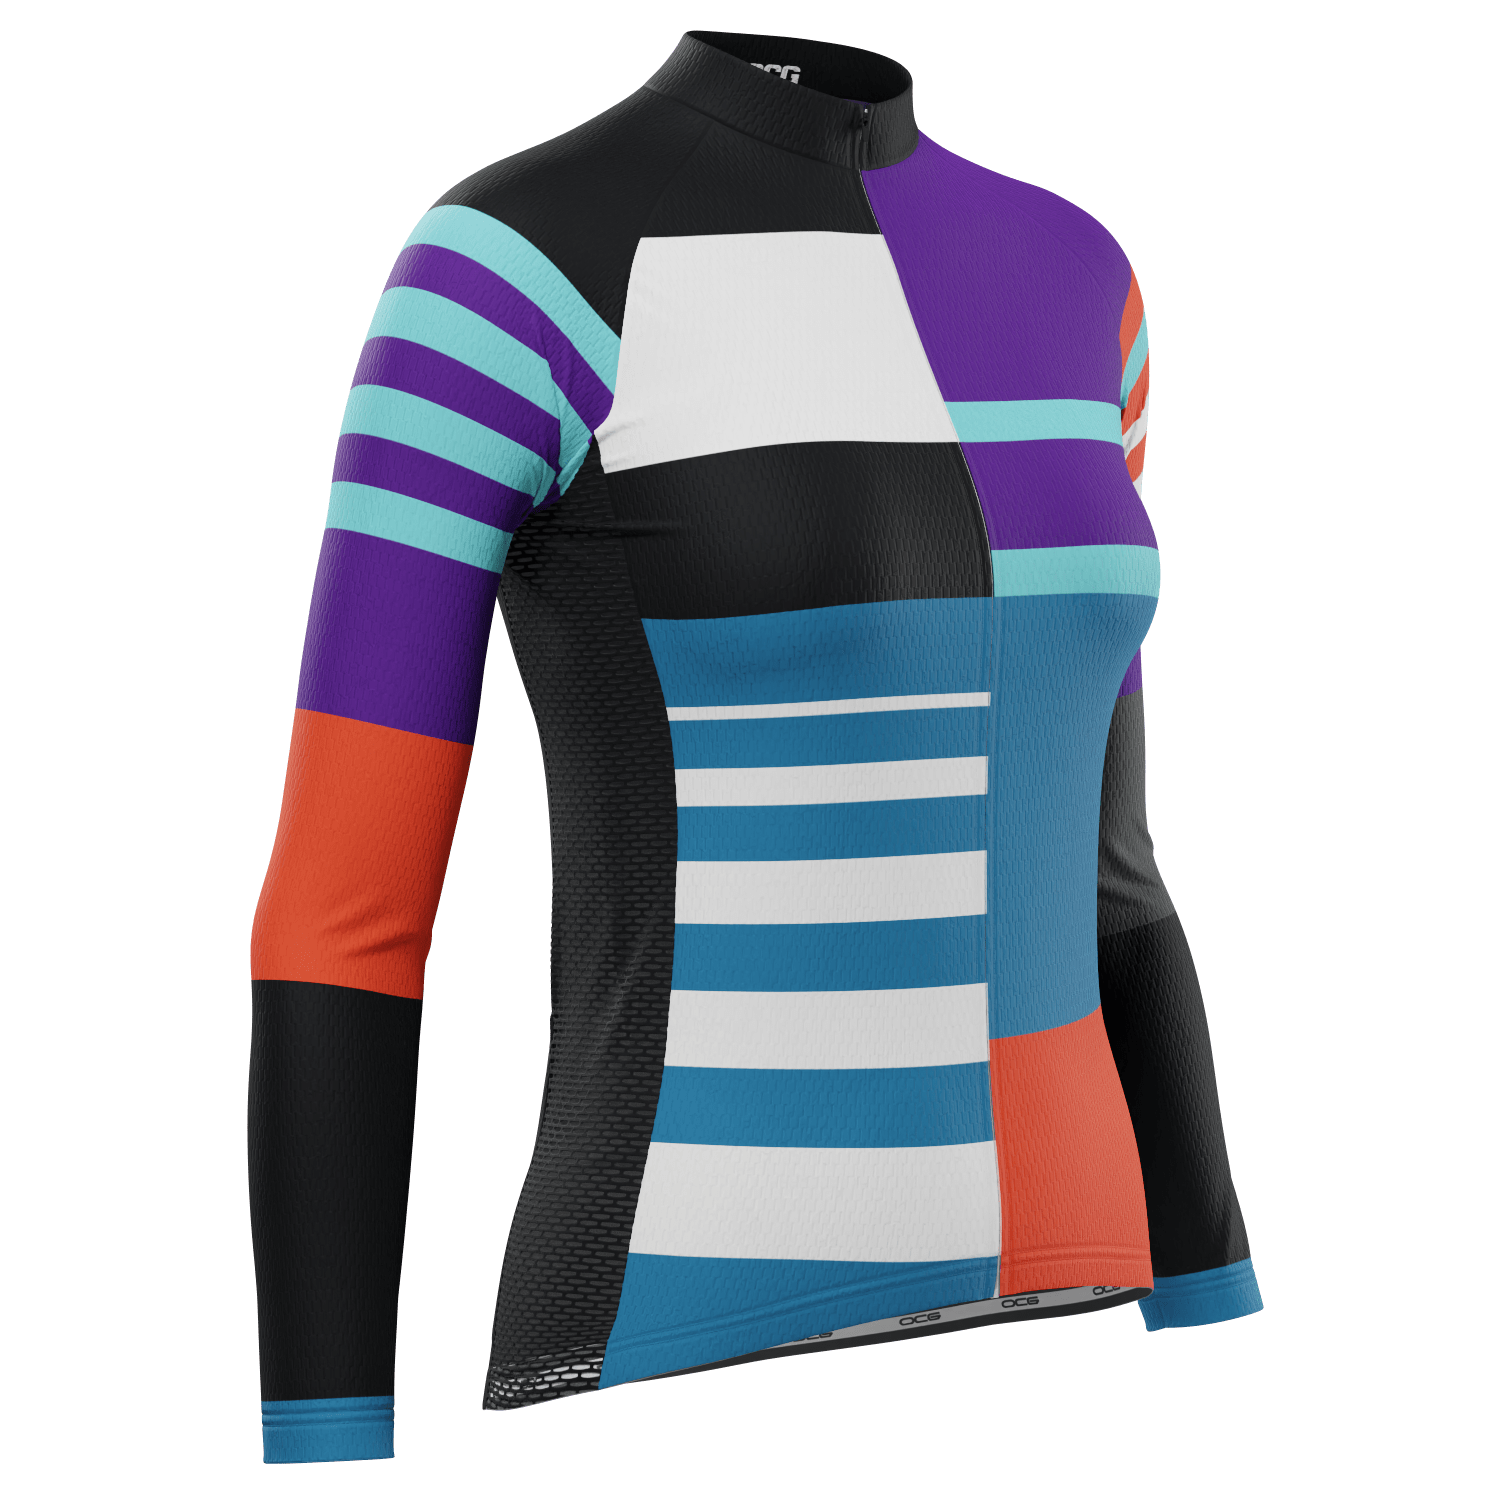 Women's Winter Stripes Long Sleeve Cycling Jersey